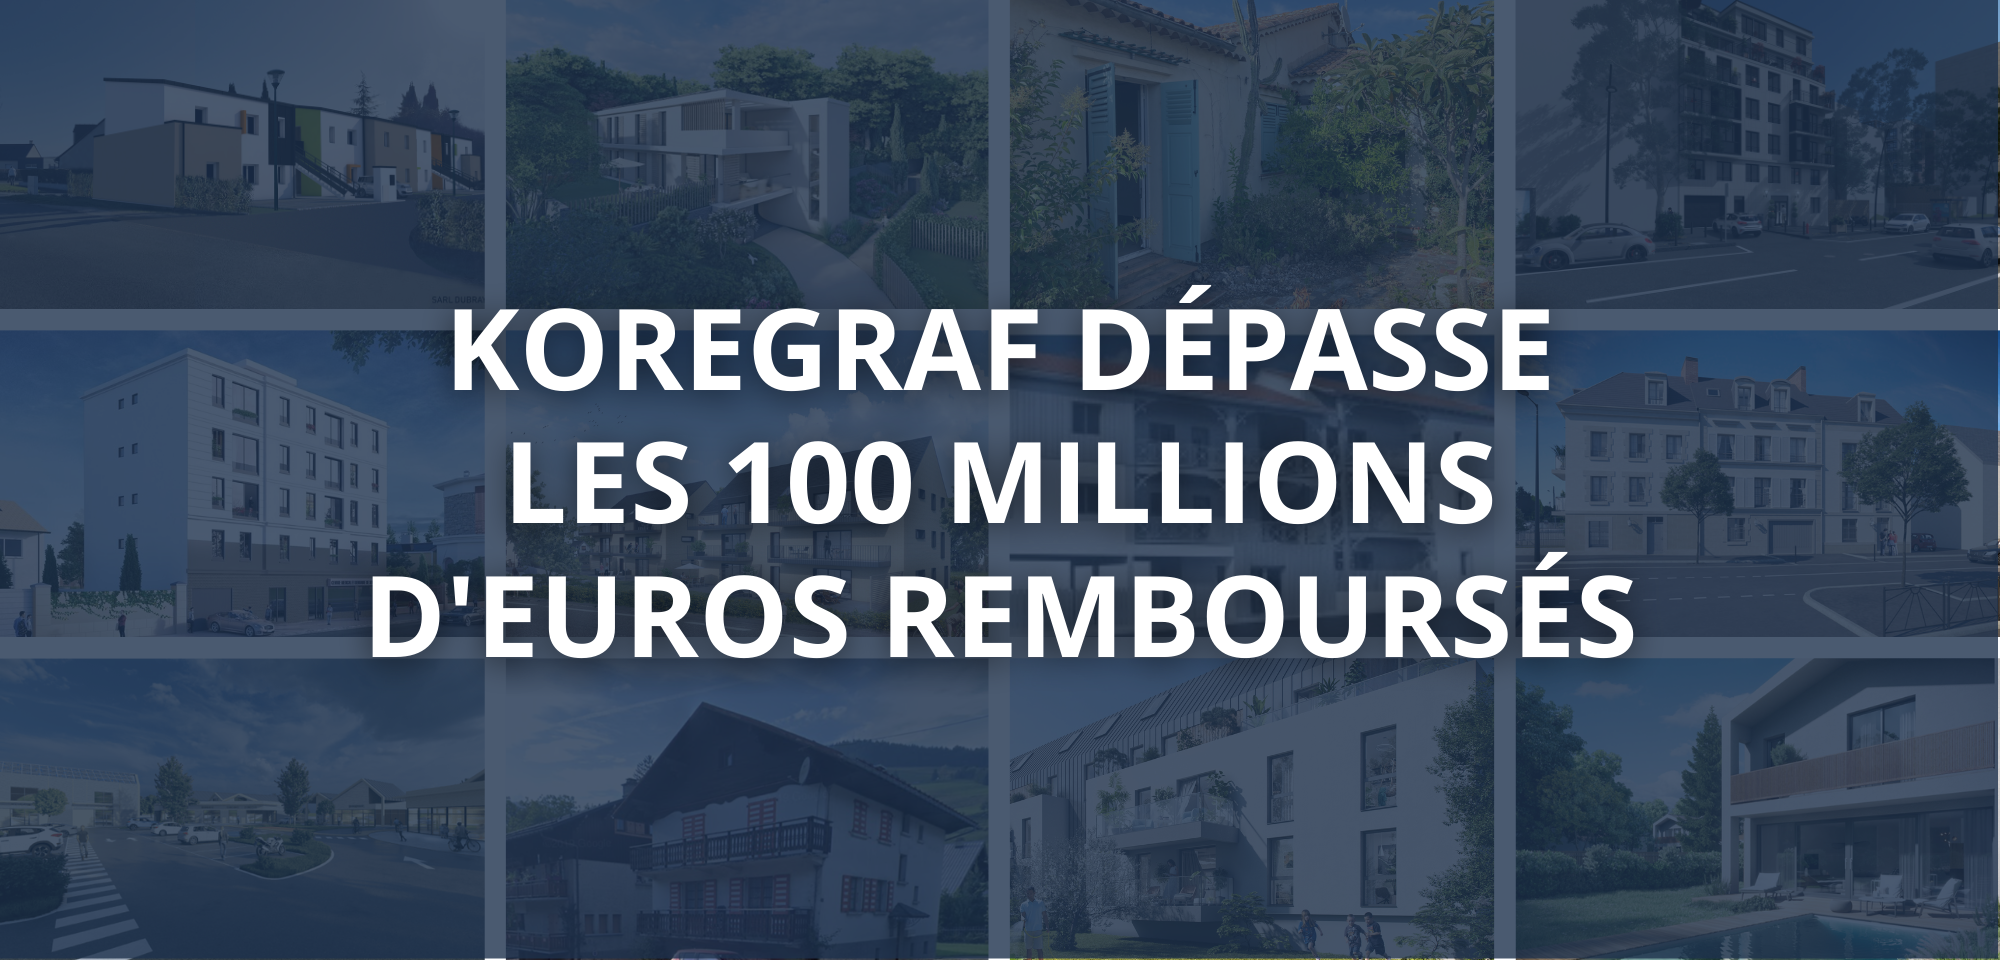 Koregraf atteint les 100 millions d'euros remboursés